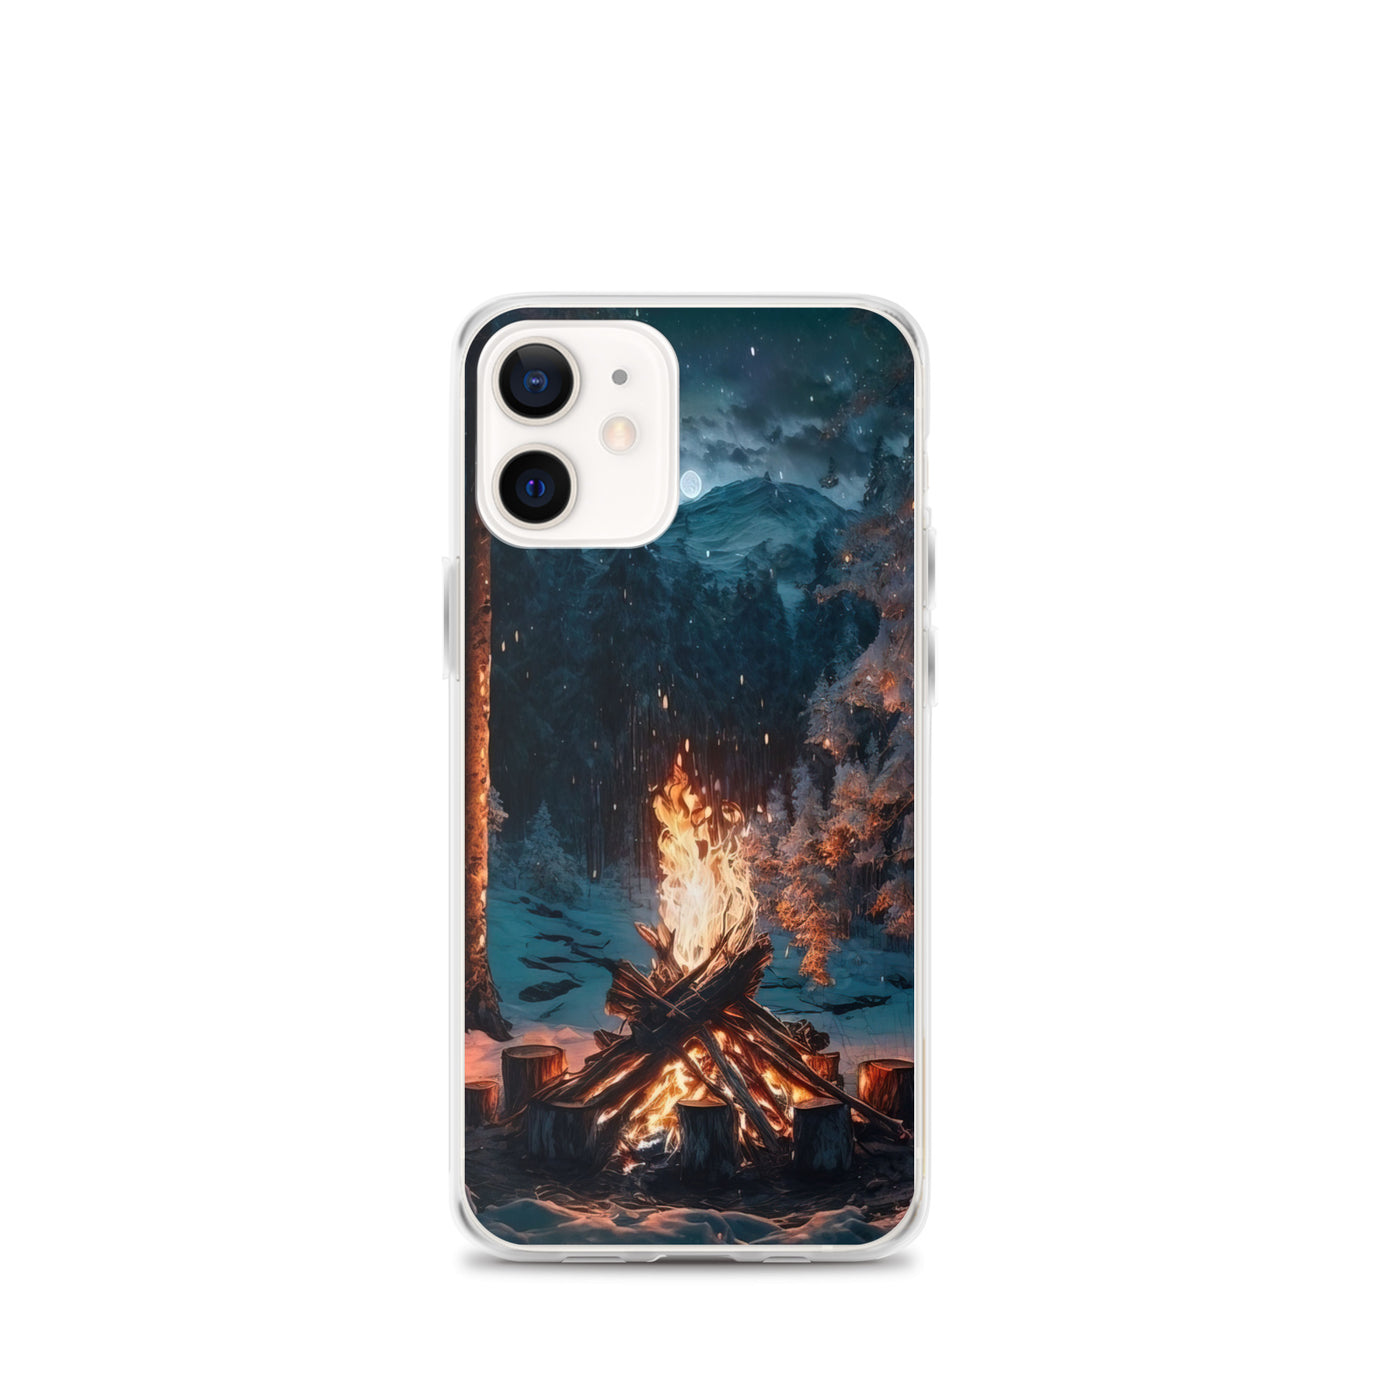 Lagerfeuer beim Camping - Wald mit Schneebedeckten Bäumen - Malerei - iPhone Schutzhülle (durchsichtig) camping xxx iPhone 12 mini